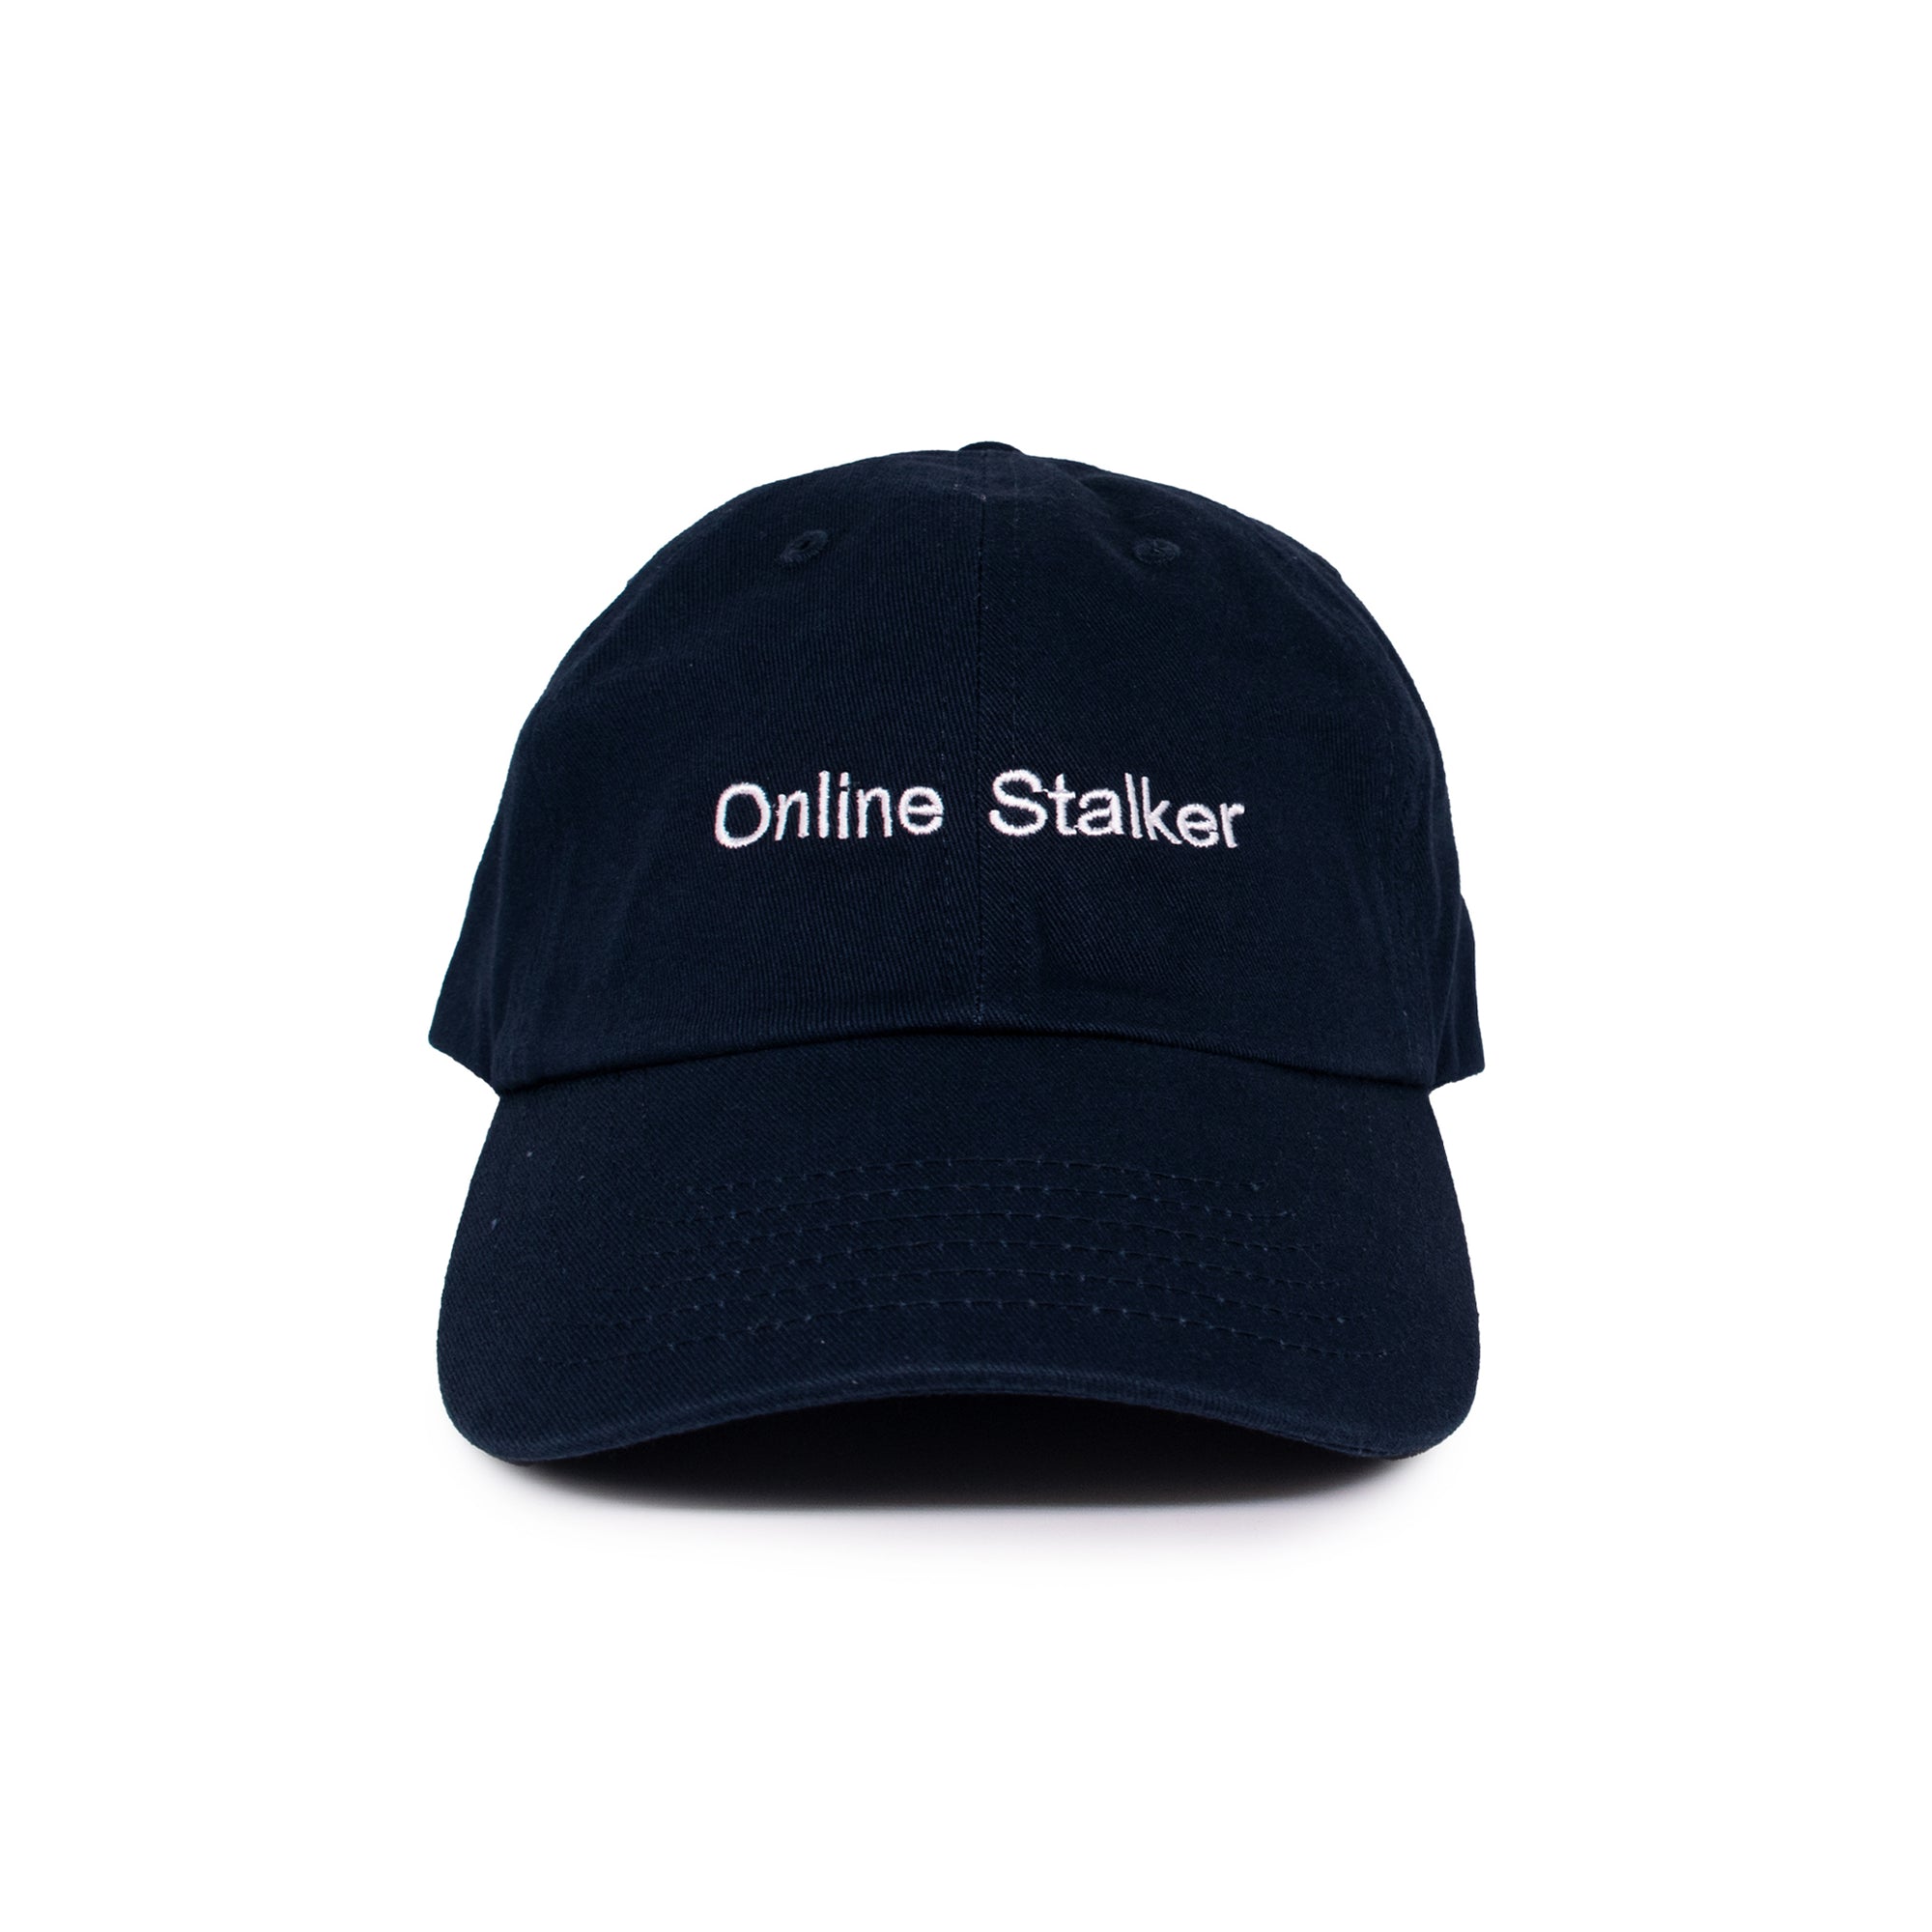 ONLINE STALKER HAT